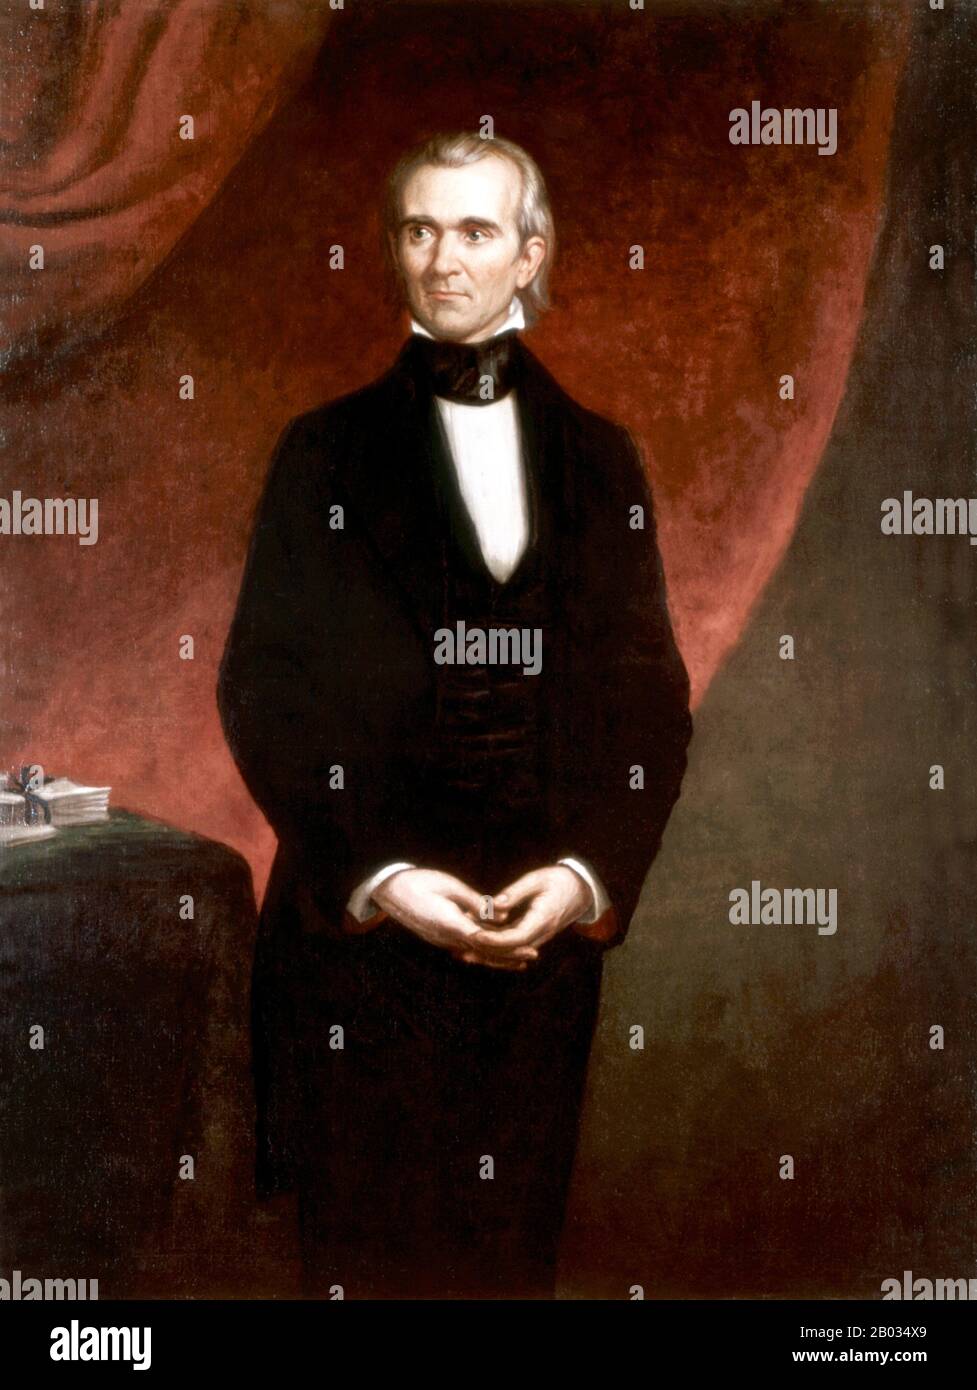 James Knox Polk (* 2. November, † 15. Juni 1849) war der 11. Präsident der Vereinigten Staaten (22-49). Polk wurde im Mecklenburg County in North Carolina geboren. Später lebte und vertrat er Tennessee. Als Demokrat war Polk der 13. Sprecher des Repräsentantenhauses (1831-39) - der einzige präsident, der als Sprecher des Repräsentantenhauses fungiert hat - und Gouverneur von Tennessee (1831-41). Polk war der überraschende (dunkle Pferd) Kandidat für das präsidentenamt im Jahr 1844 und besiegte Henry Clay von der rivalisierenden Whig Party, indem er versprach, die Republik Texas zu annektieren. Polk war während der Zweiten Stufe Anführer der Jacksonian Democracy Stockfoto